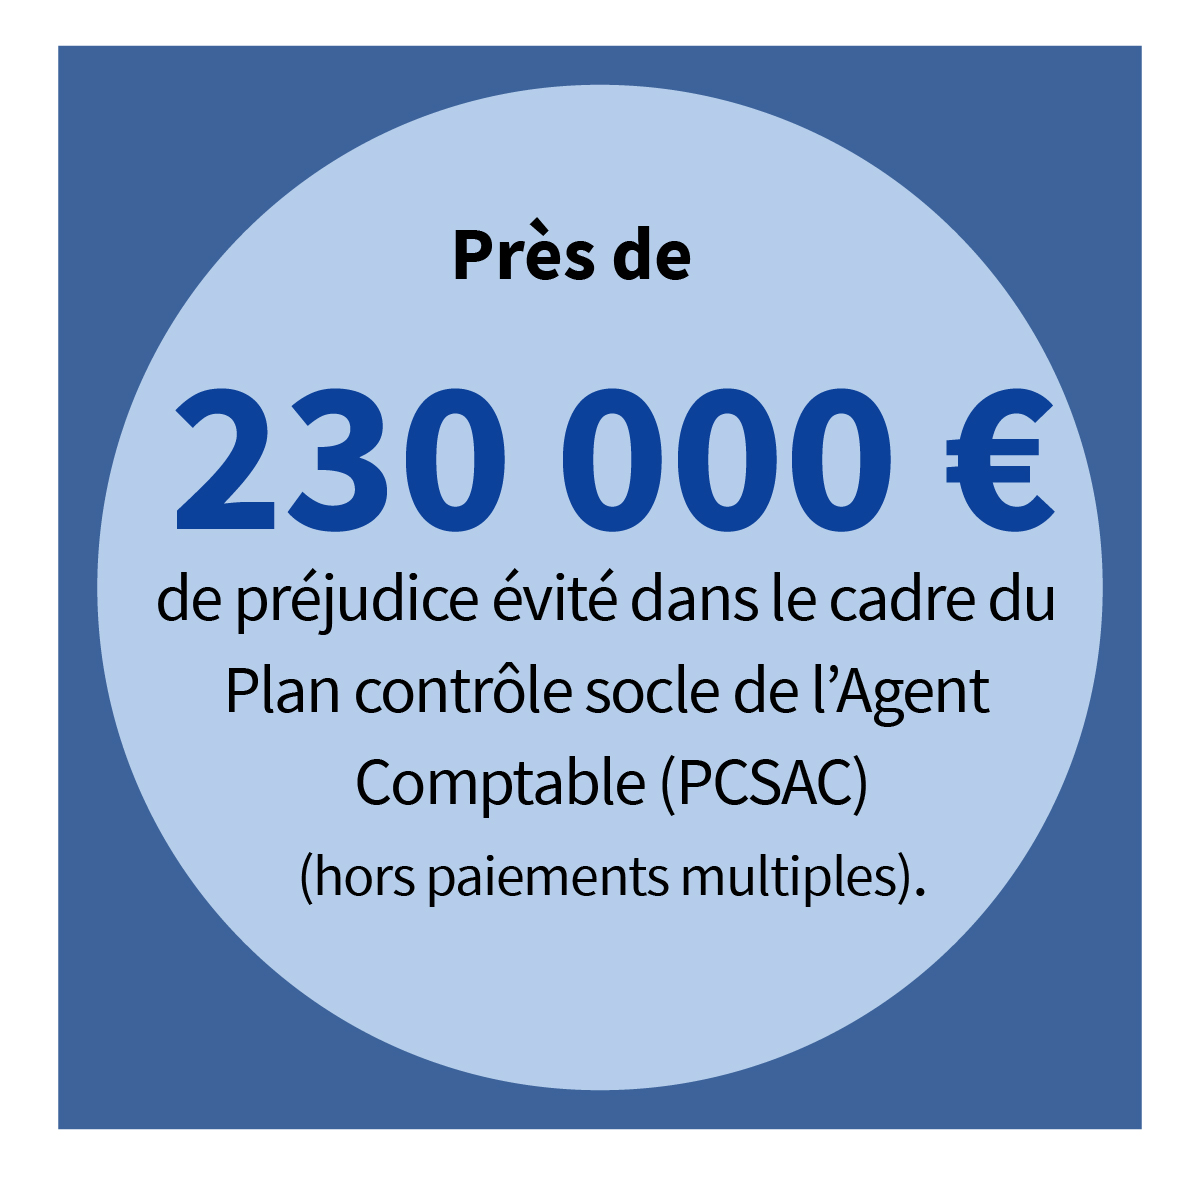 Près de 230 000 € de préjudice évité dans le cadre du PCSAC (hors paiements multiples).